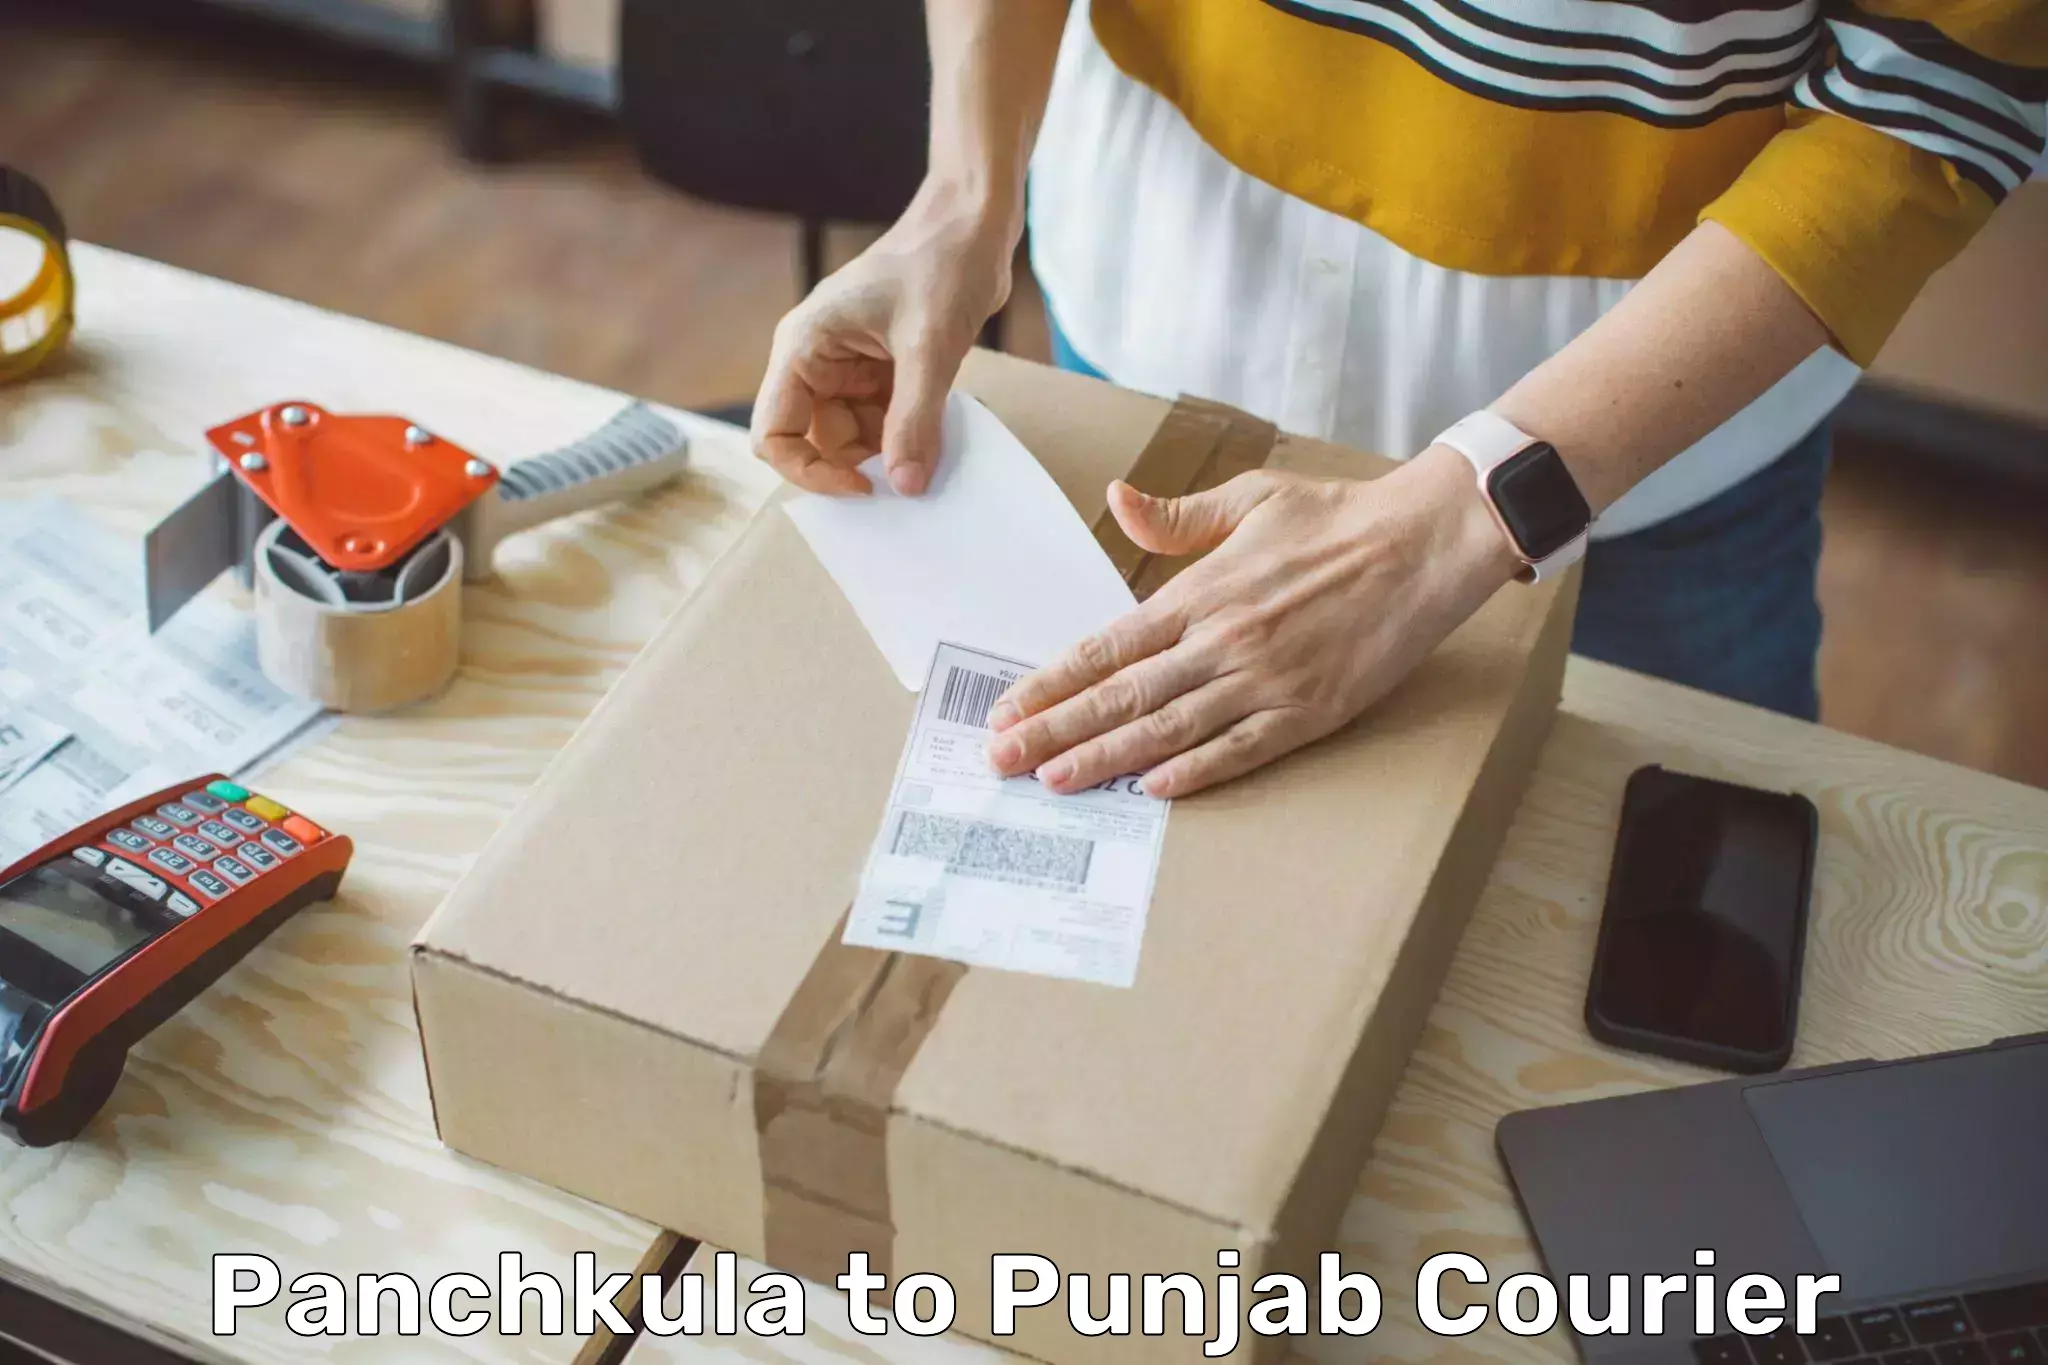 User-friendly courier app Panchkula to Zira